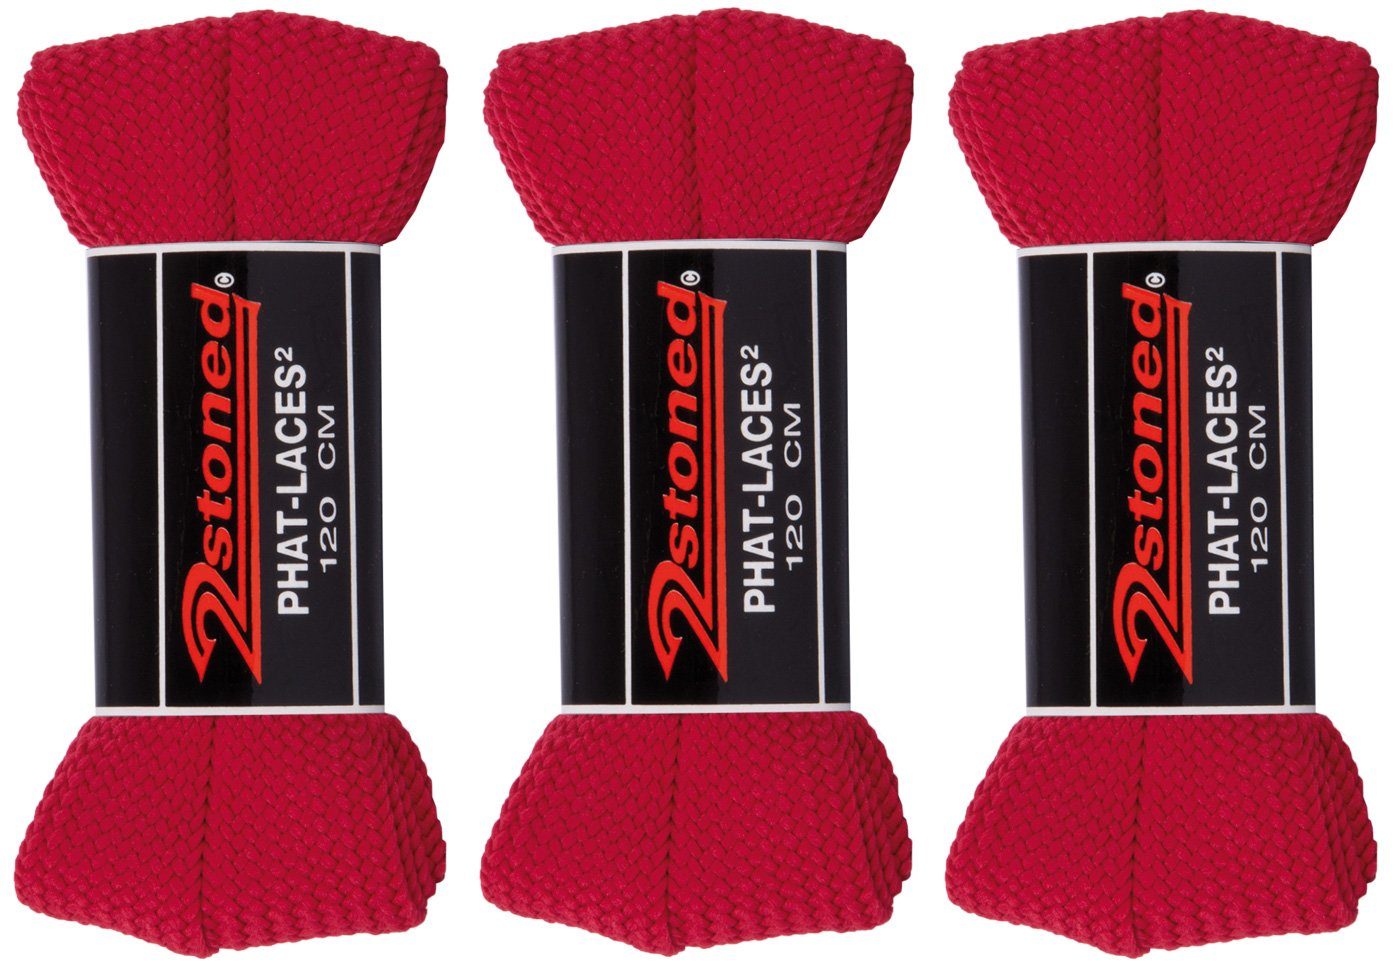 2Stoned Schnürsenkel Bundle Phat Laces 120 cm lang und 3 cm breit, 3 Paar, extrabreit für Sneaker und Turnschuhe Rot